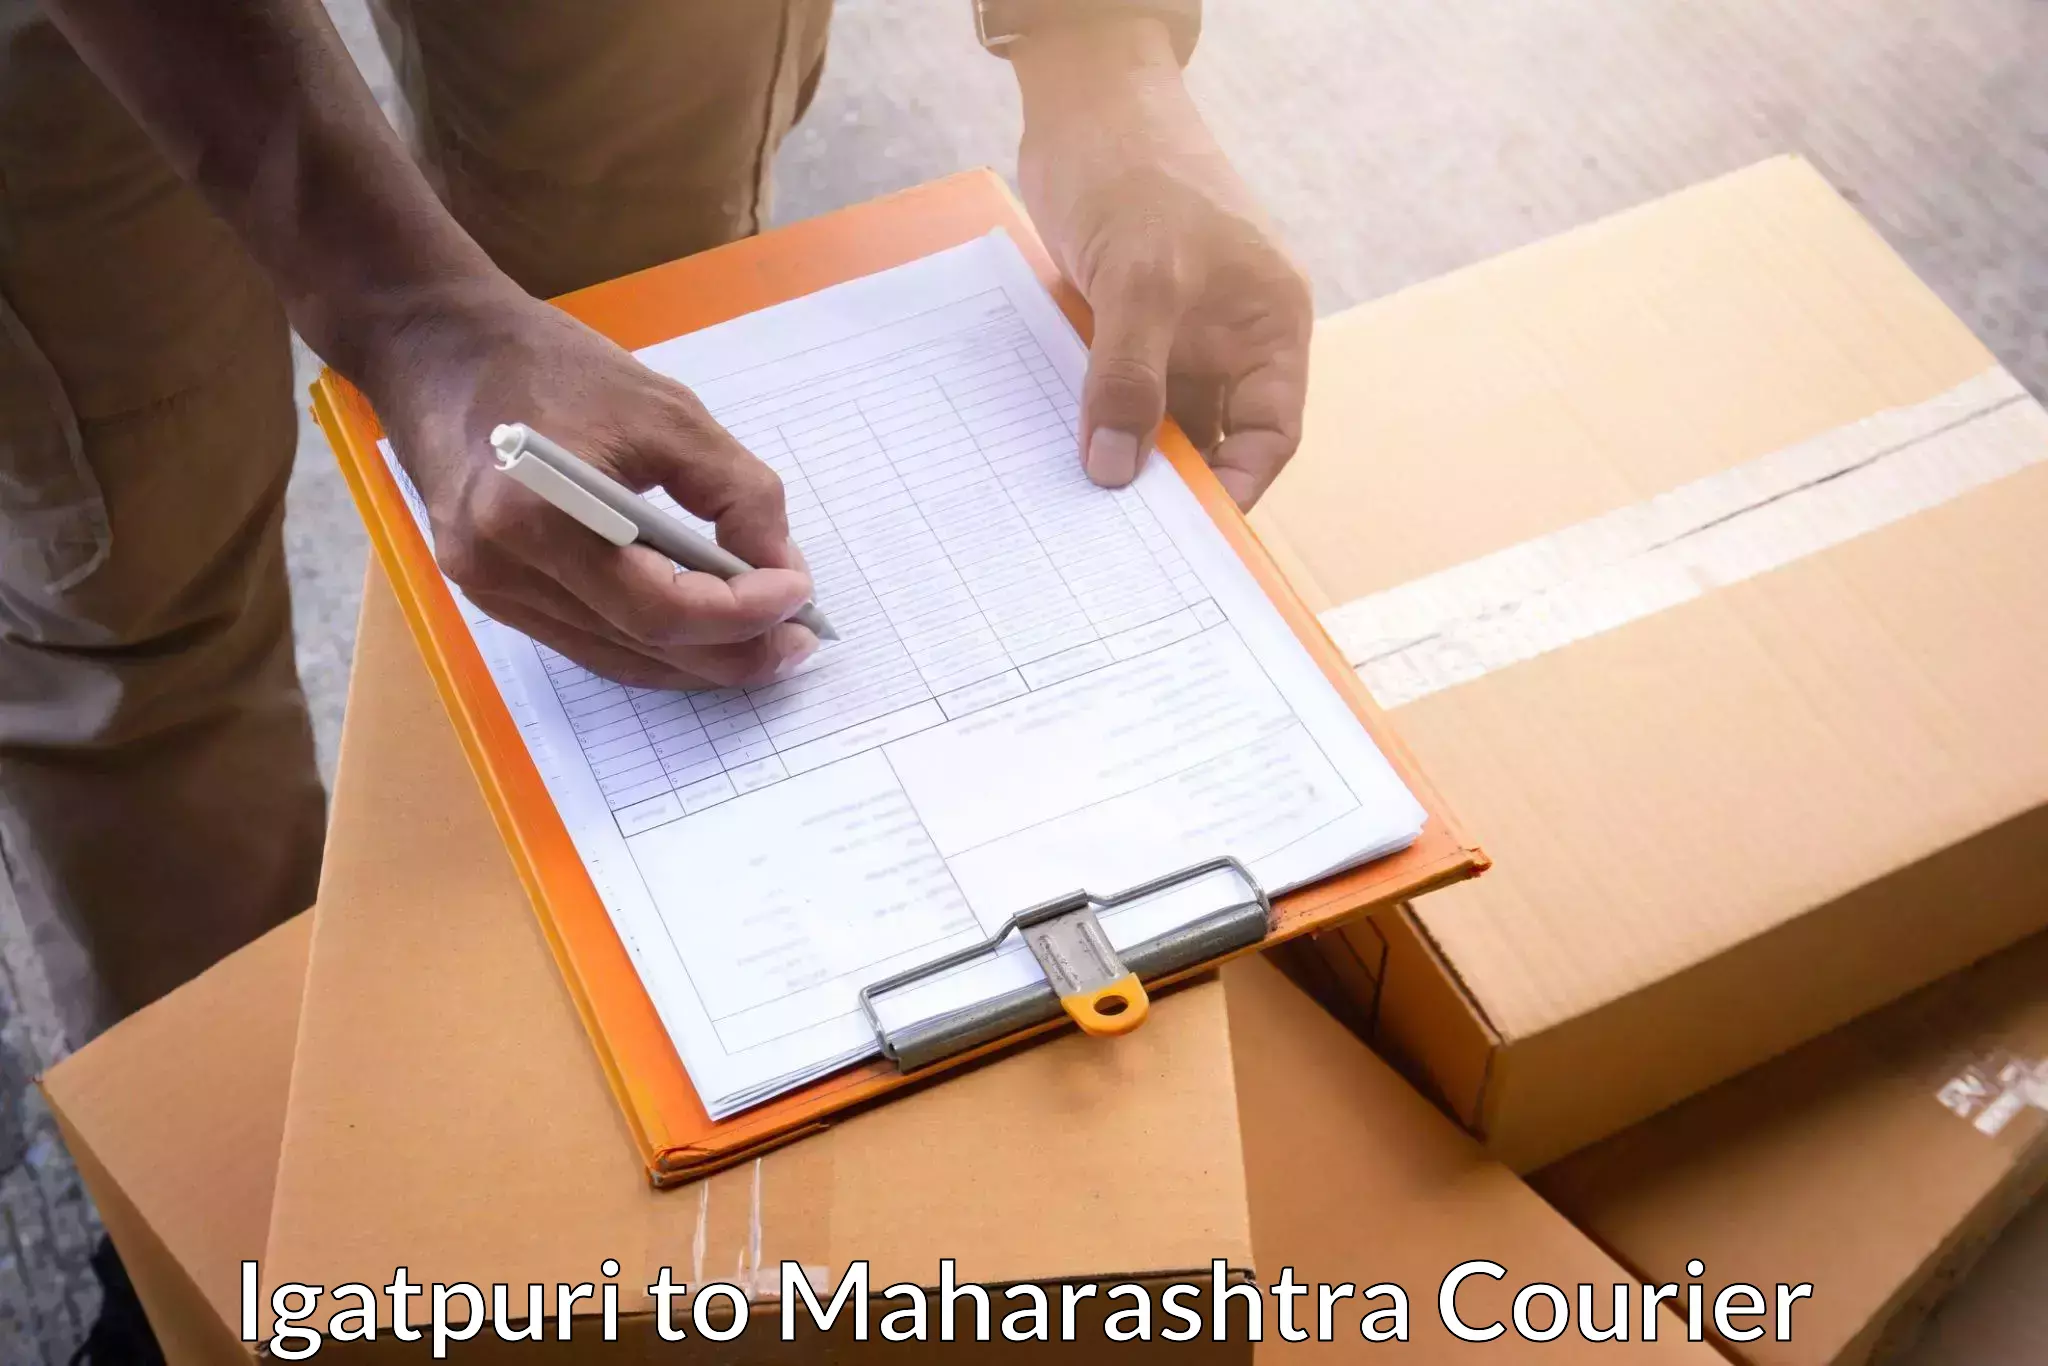 Door-to-door shipment in Igatpuri to Pune